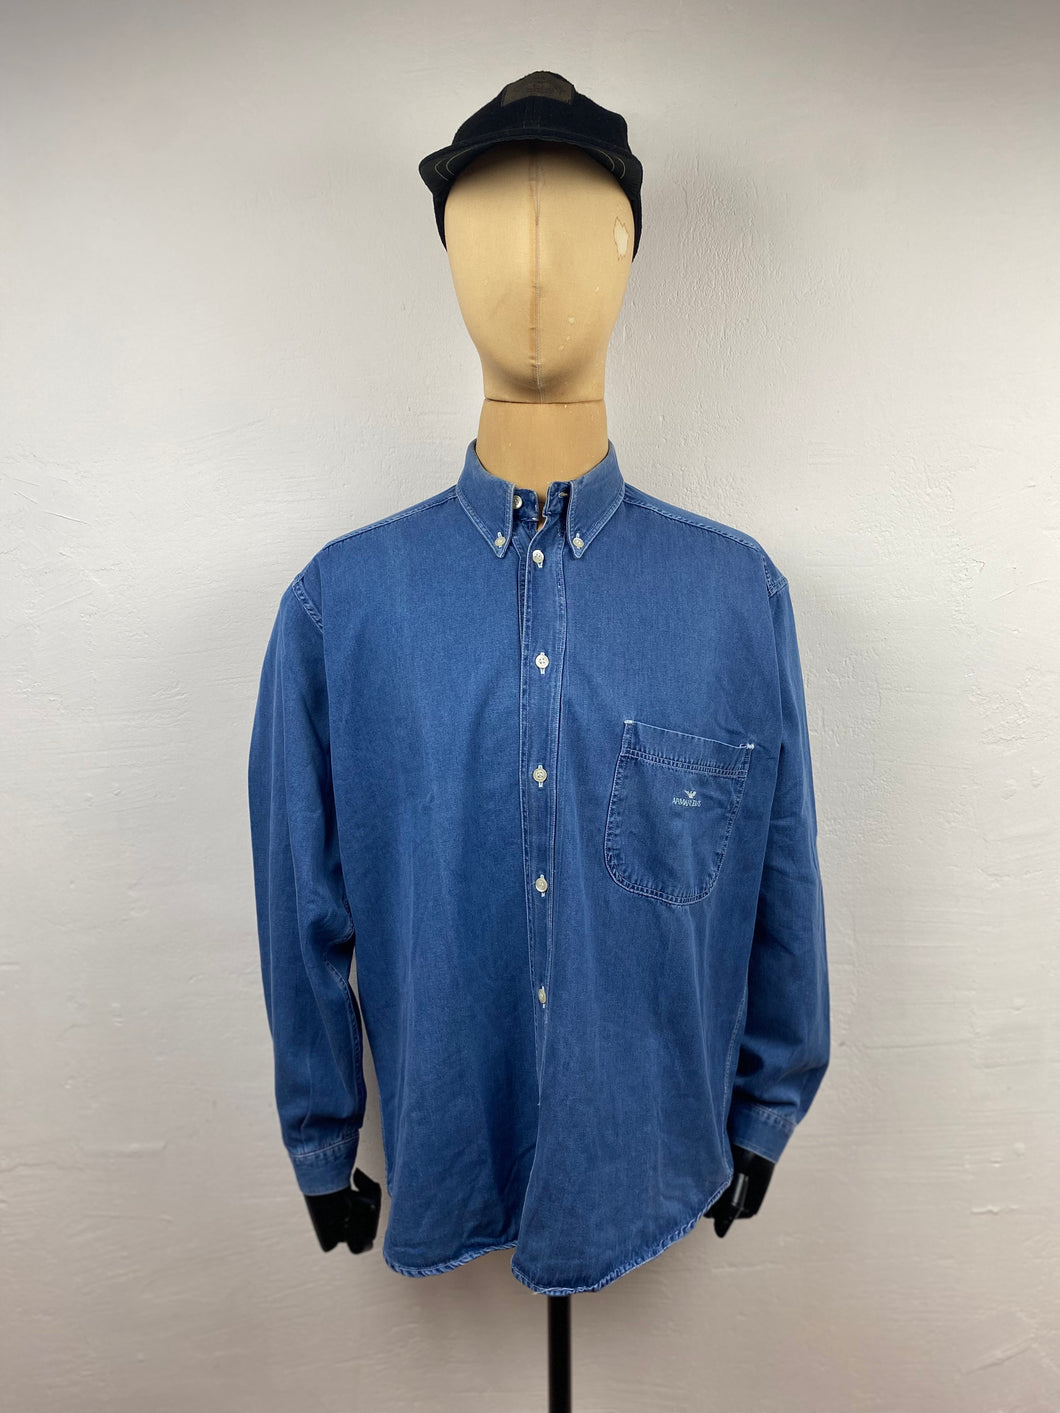 1980s Aj heavy denim shirt blue